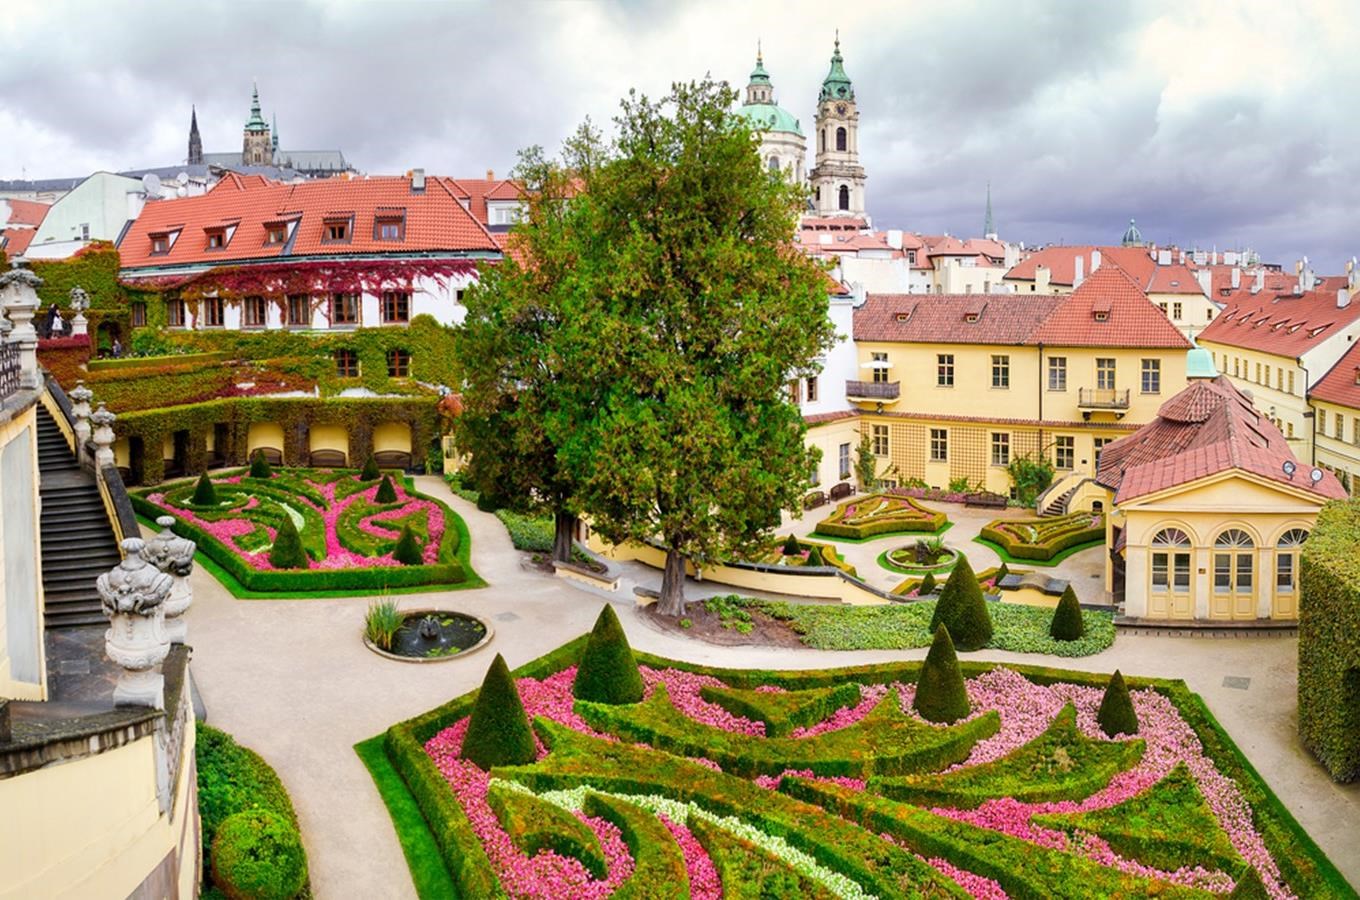 Vrtbovská zahrada – nejkrásnější barokní zahrada v Praze